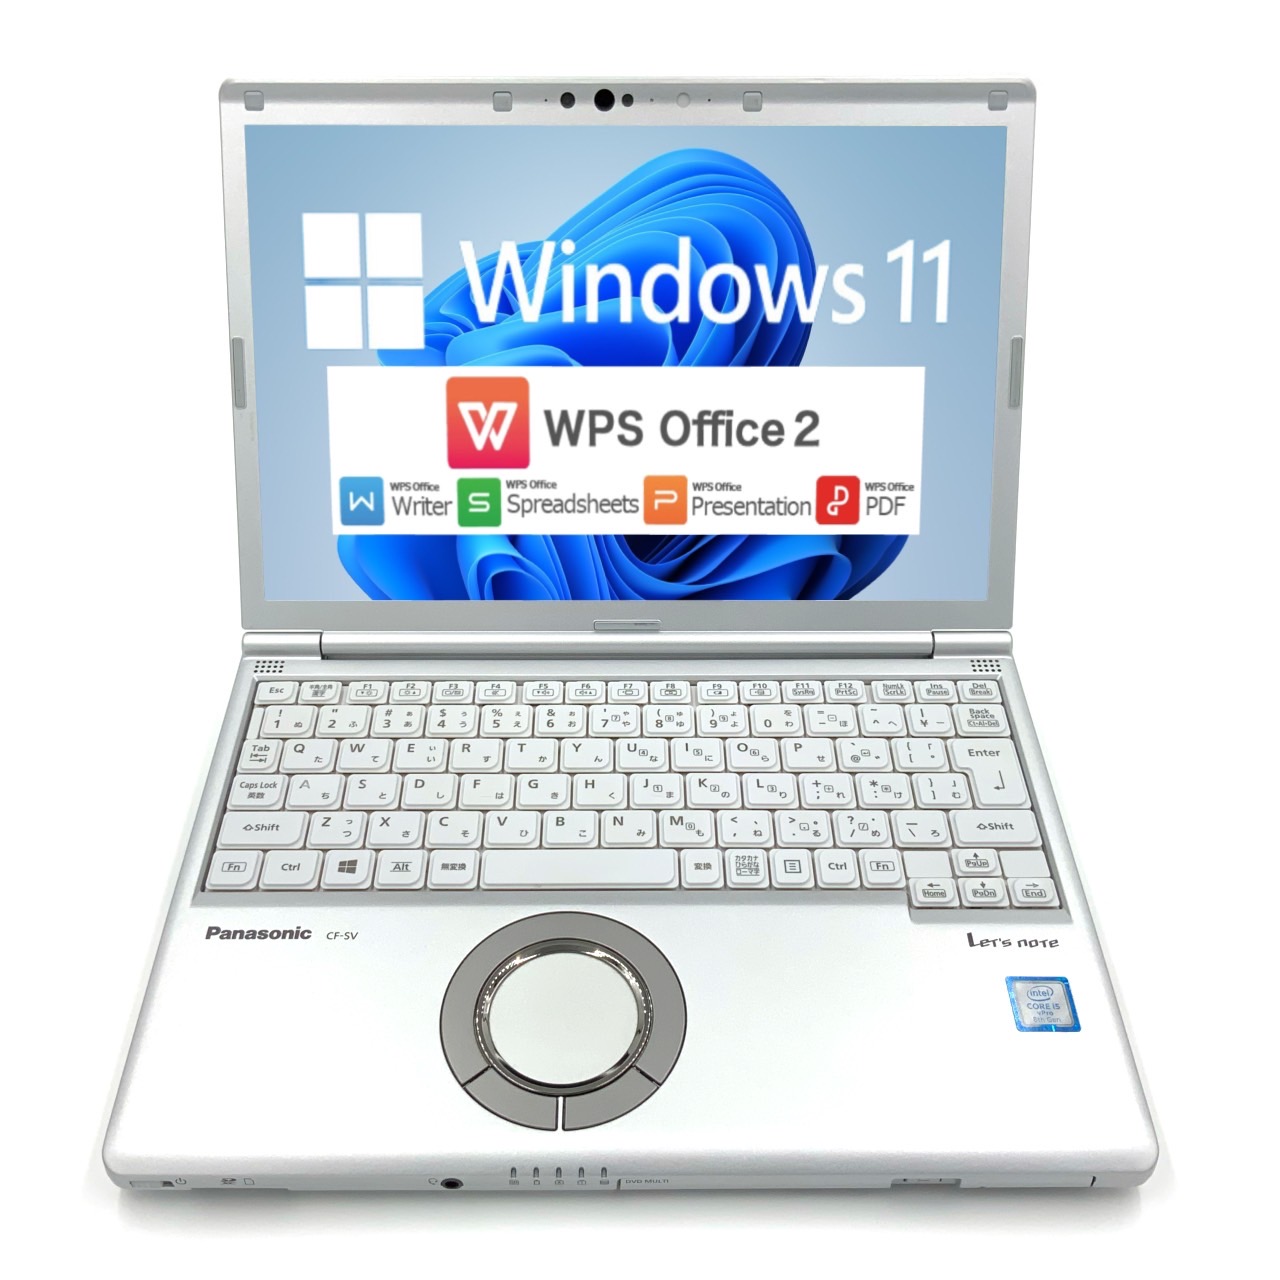 PC/タブレット ノートPC 【Windows11】【進化したレッツノート】【USB type-C PD対応】パナソニック Panasonic Let's note SV7  第8世代 Core i5 8350U/1.70GHz 8GB 新品SSD480GB M.2 スーパーマルチ 64bit WPSOffice  12.1インチ 